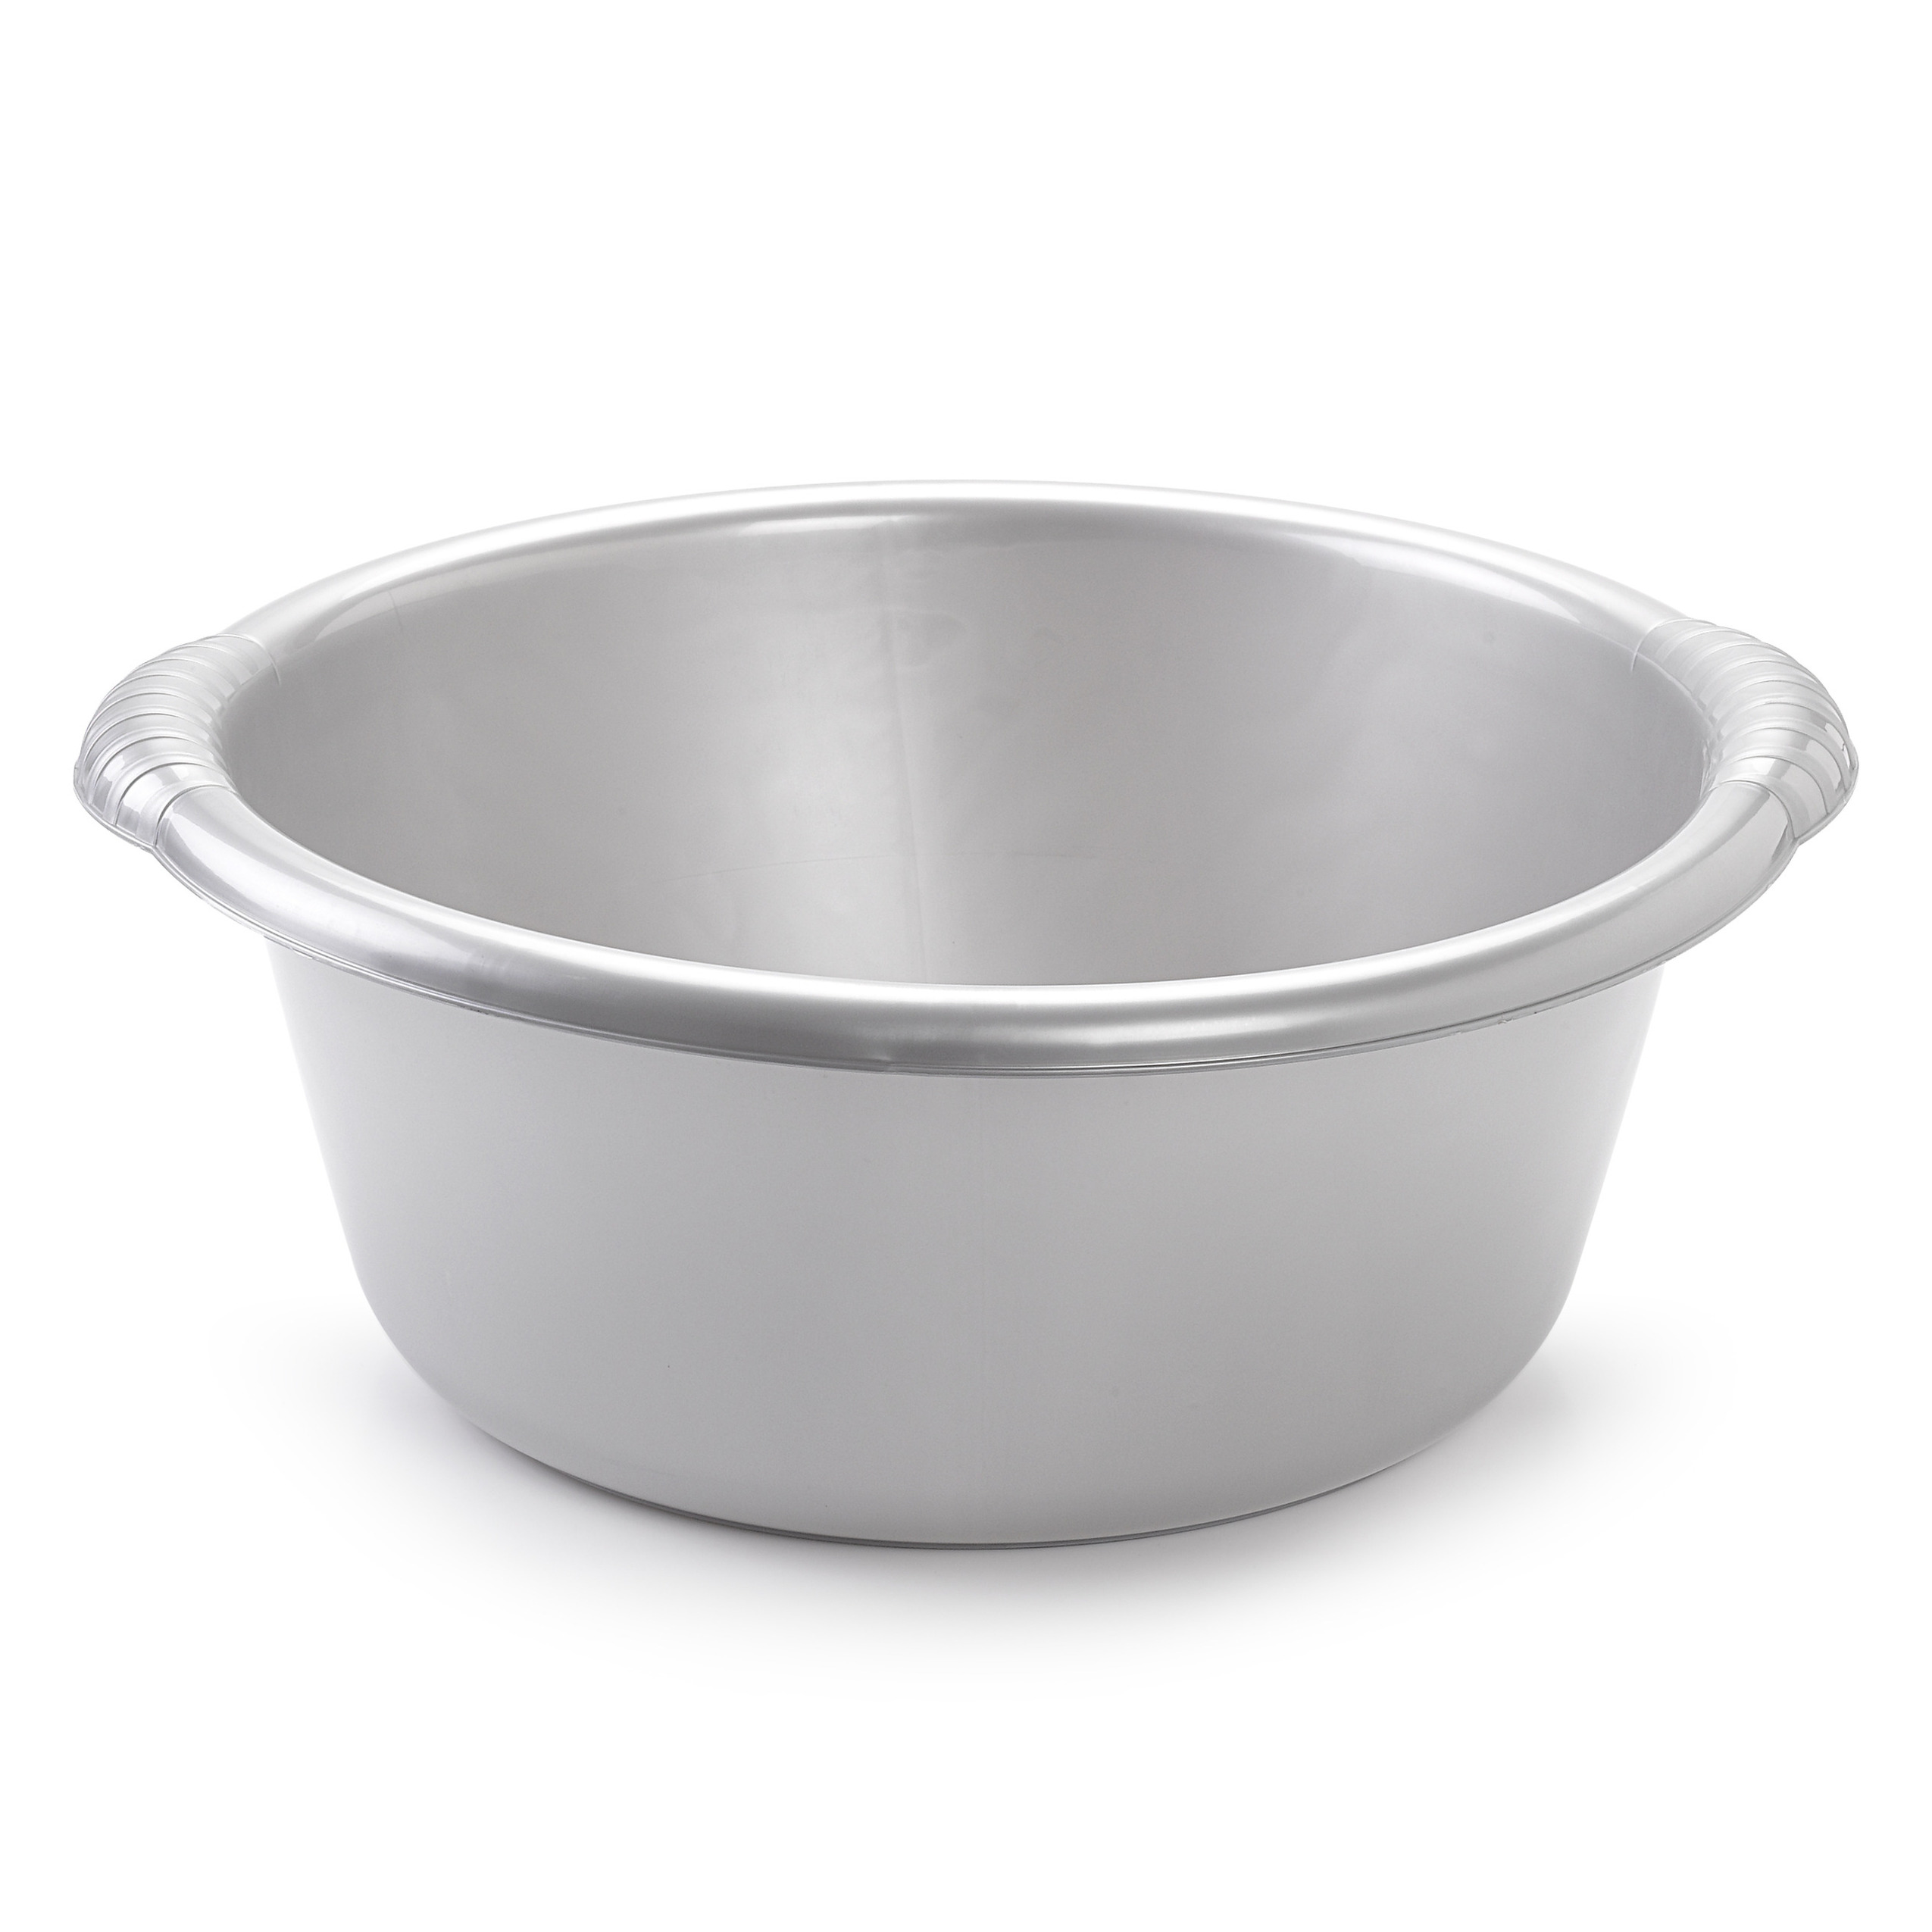 Grote ronde afwasteil-afwasbak zilver 25 liter